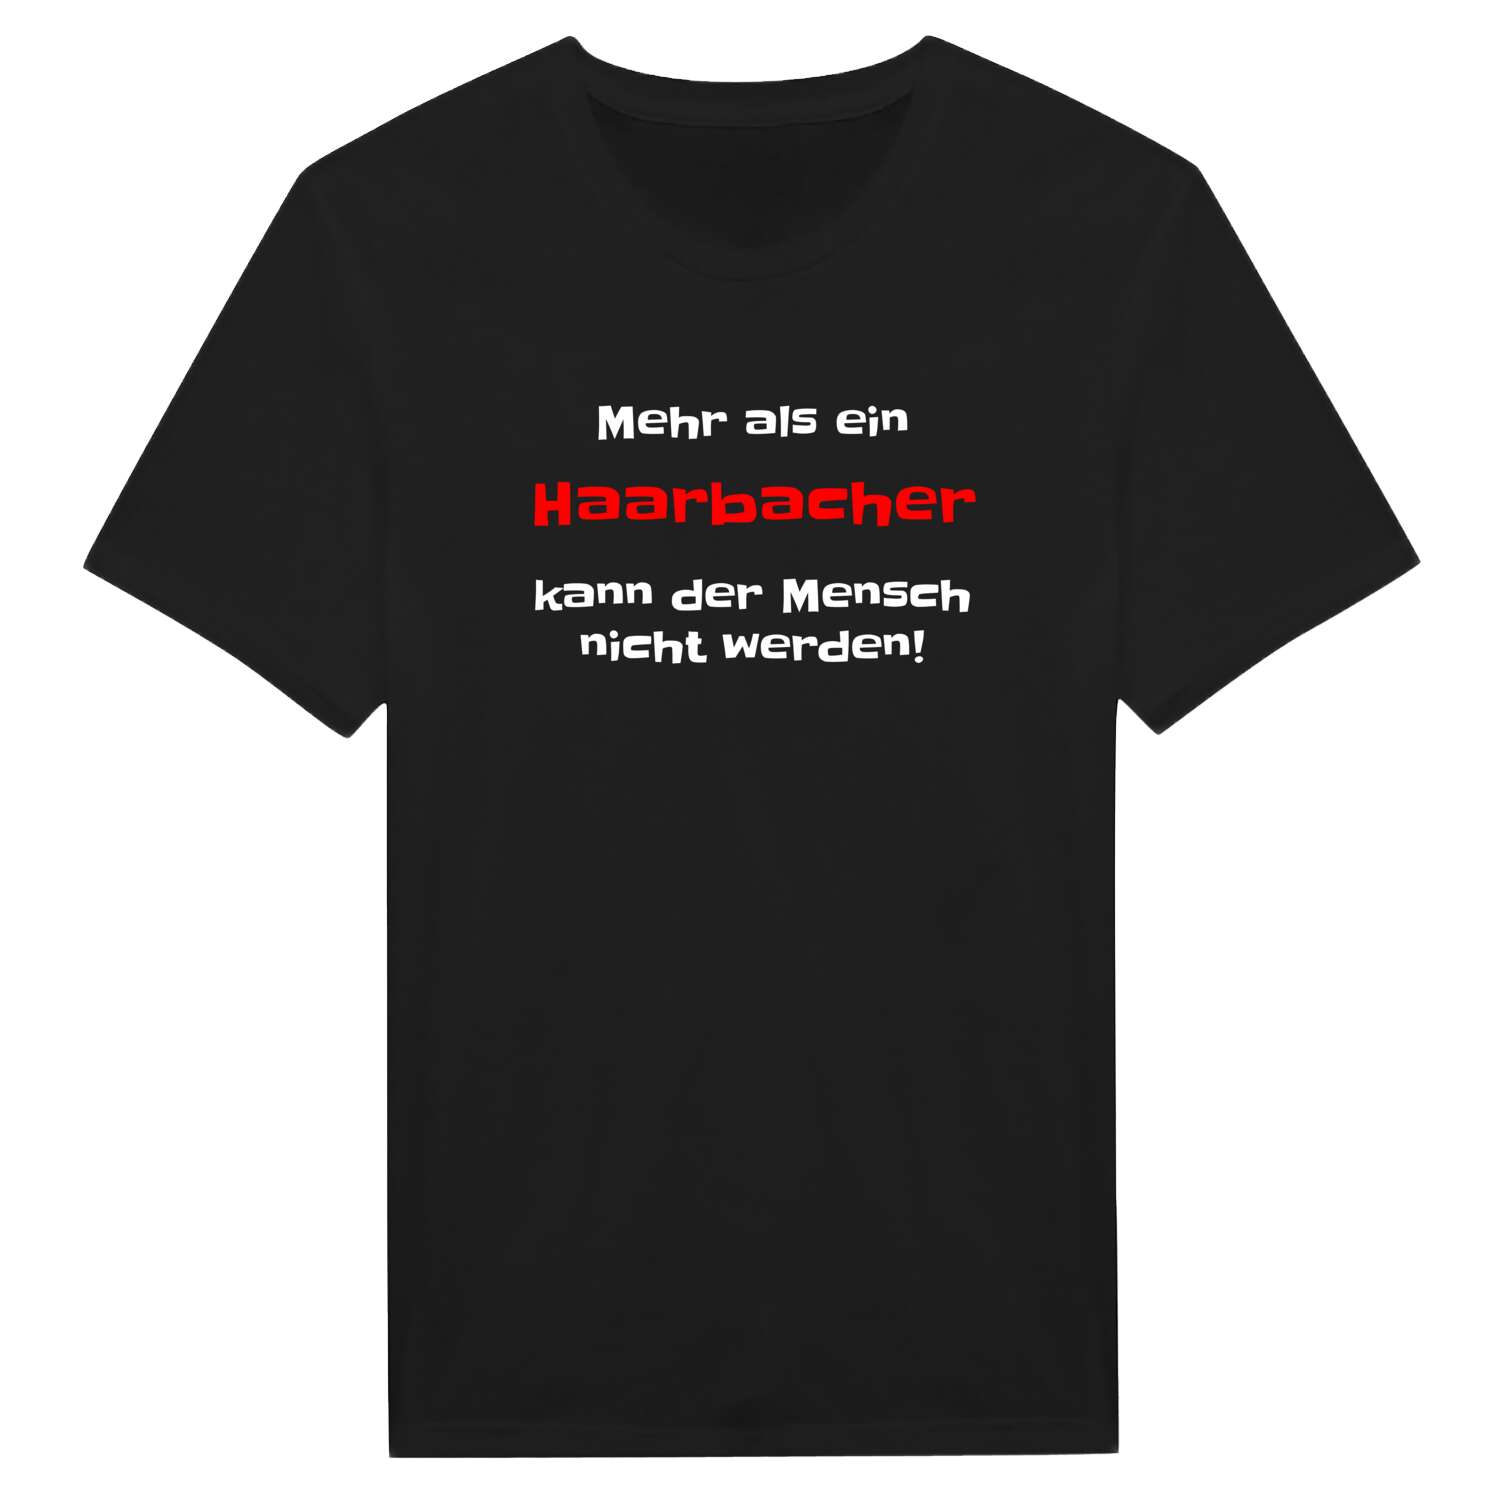 Haarbach T-Shirt »Mehr als ein«